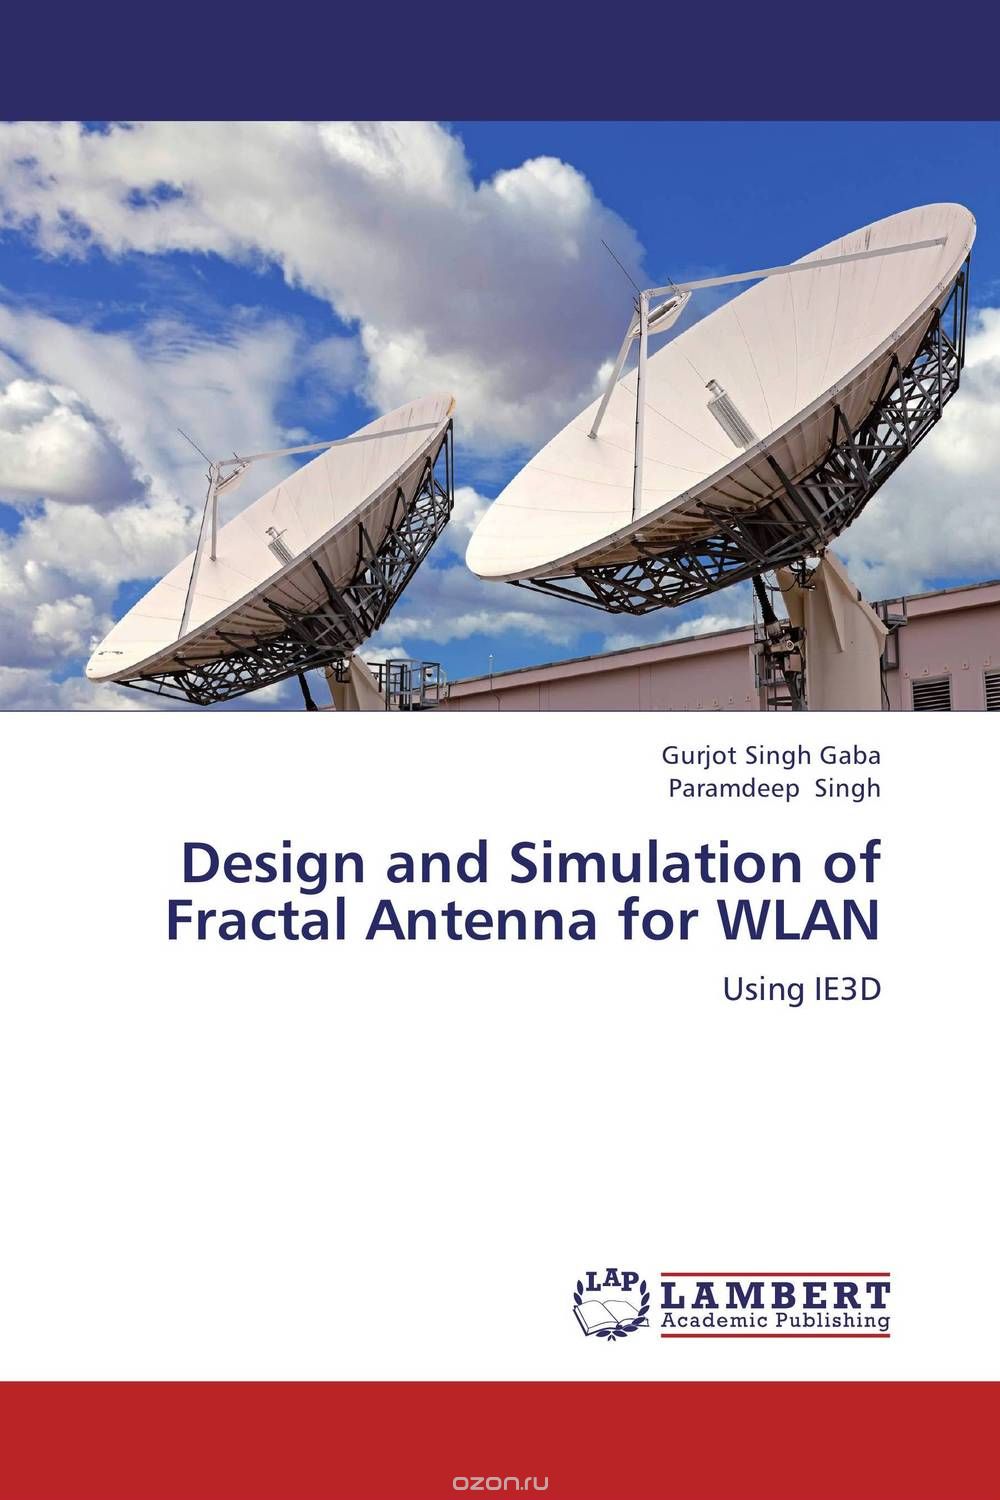 Скачать книгу "Design and Simulation of Fractal Antenna for WLAN"